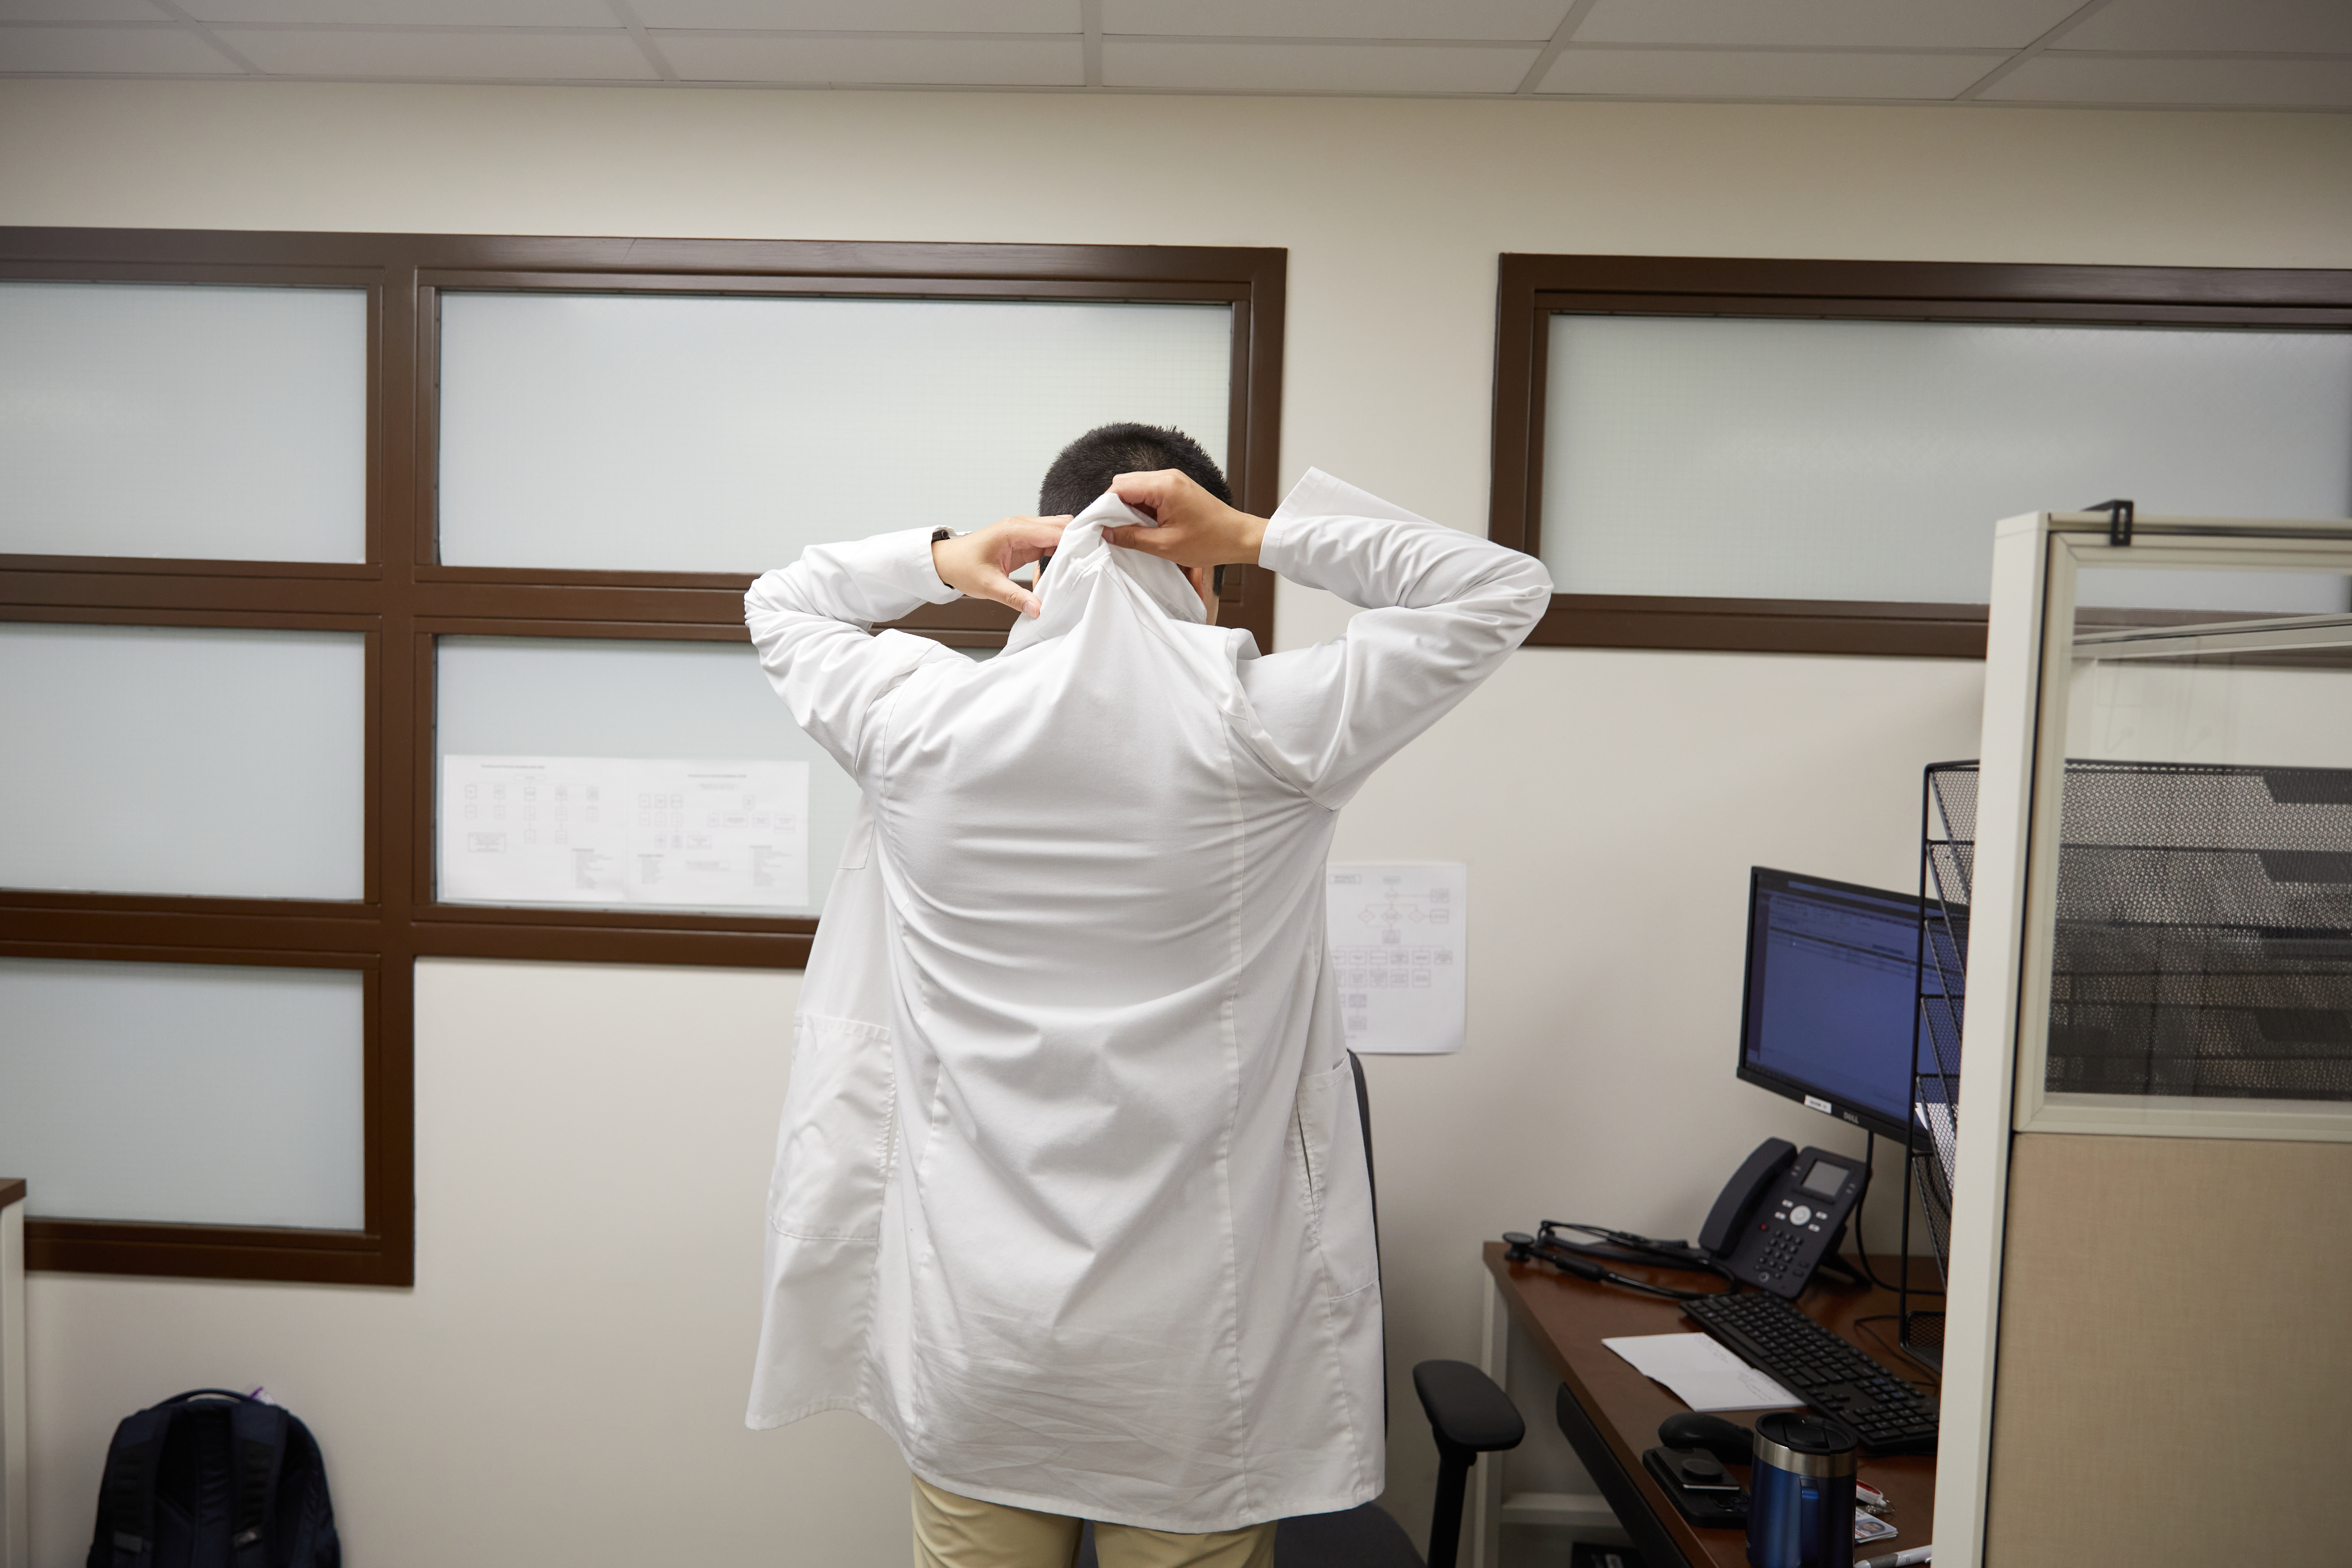 Dr. Julio Mendoza Estrada puts on his white coat